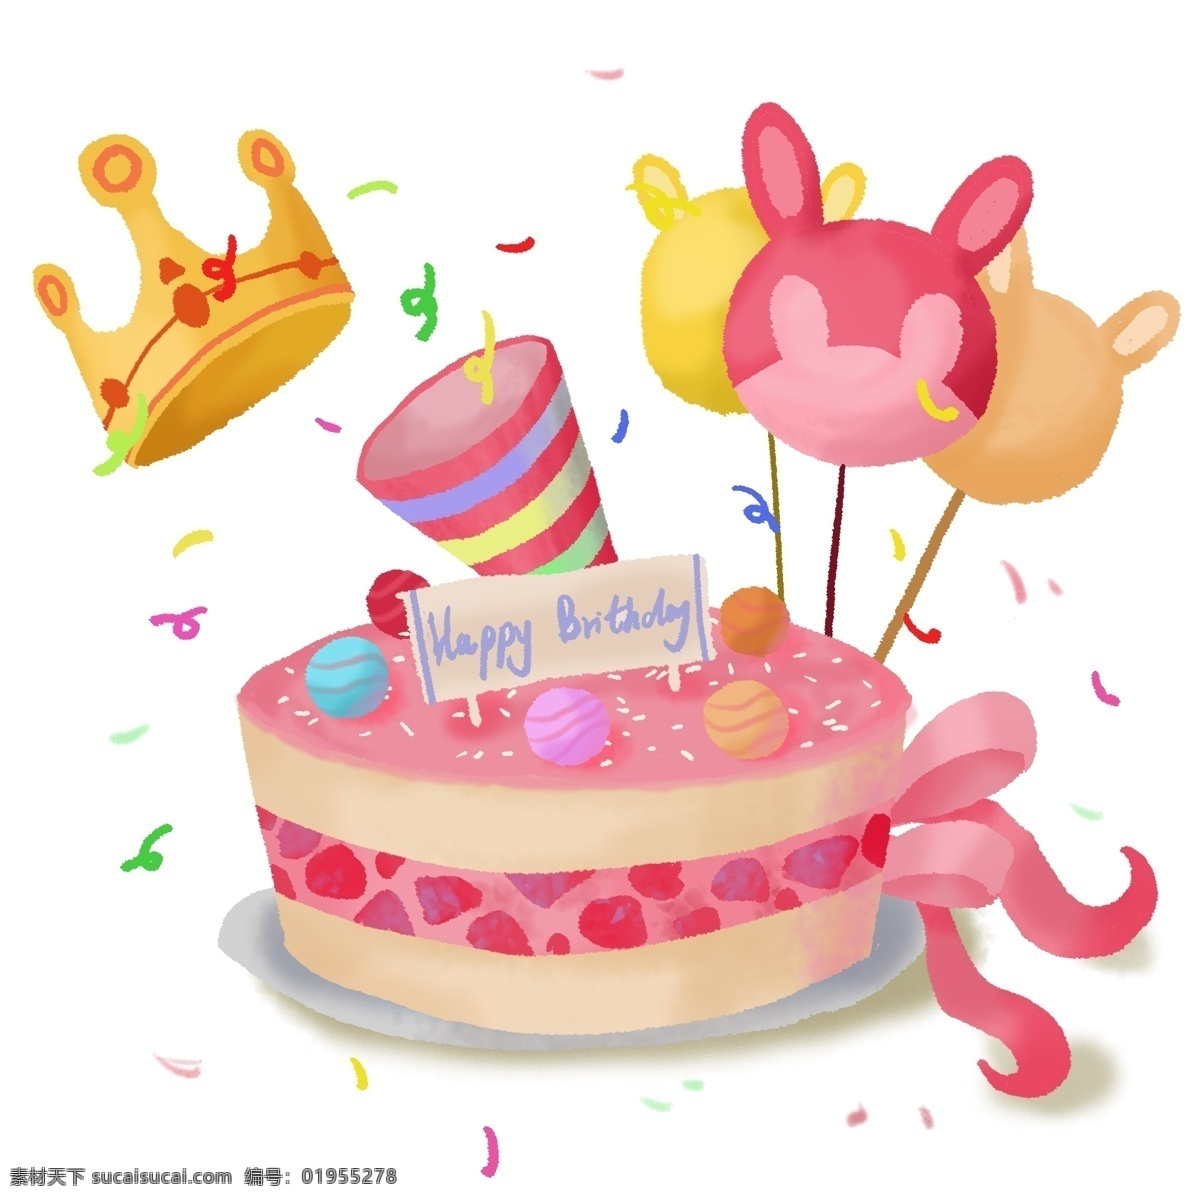 手绘 生日蛋糕 礼物 气球 皇冠 生日 快乐 生日快乐 蛋糕 女孩 粉嫩 粉色 少女心 可爱 卡通 送礼 欢喜 少女